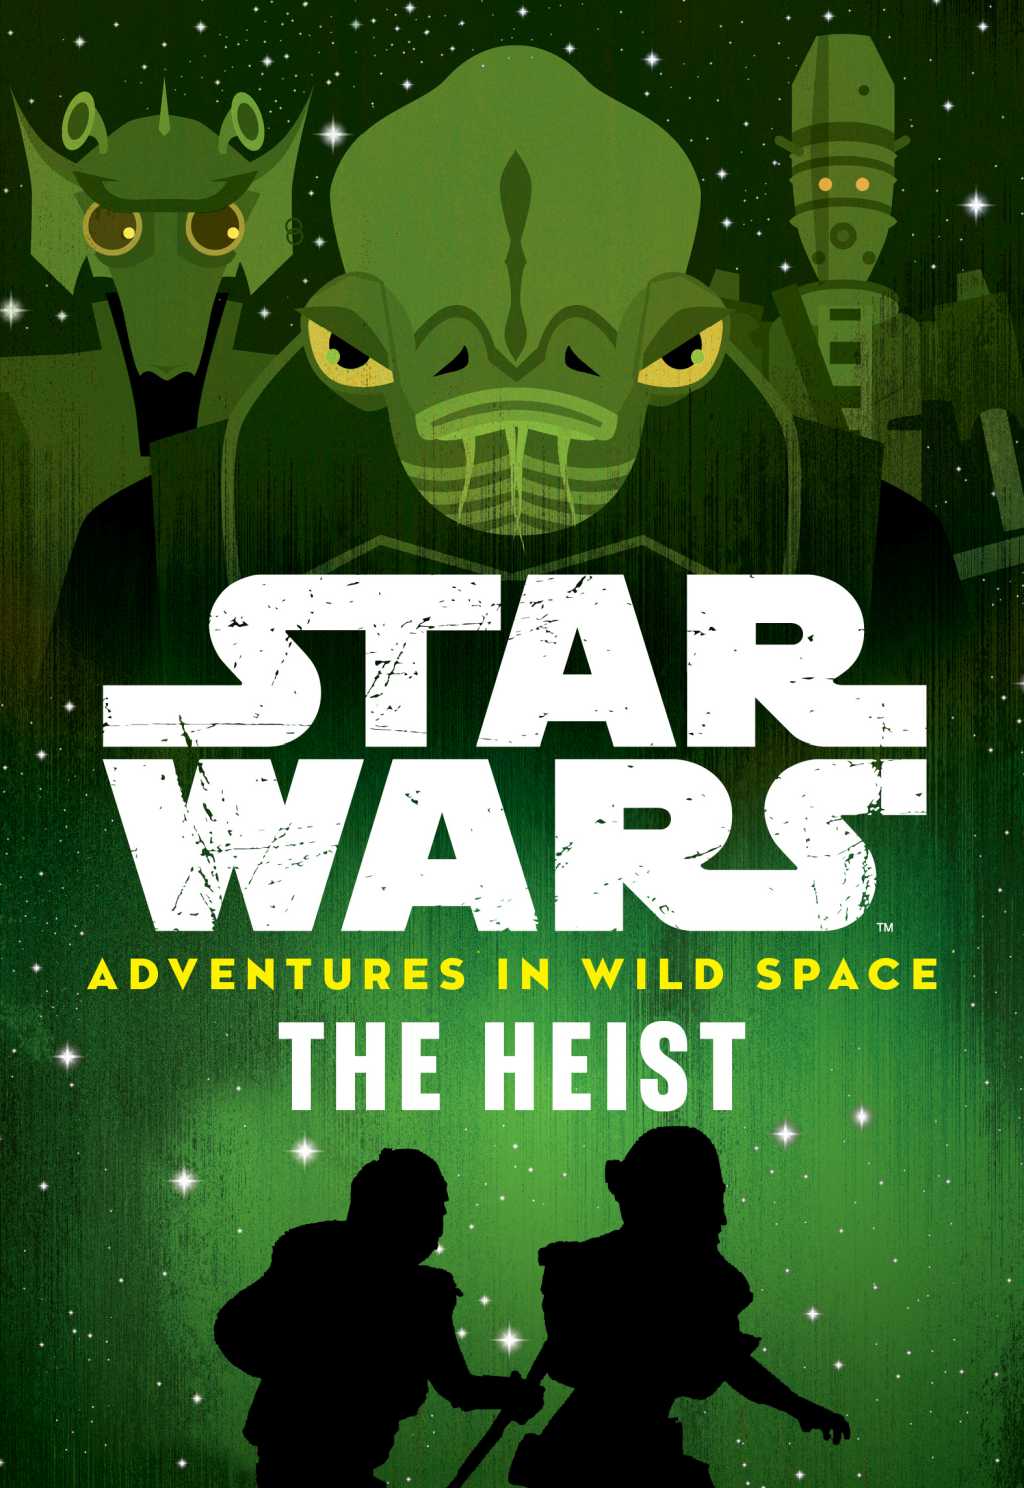 Okładka wydania amerykańskiego - Adventures in Wild Space 3: The Heist.